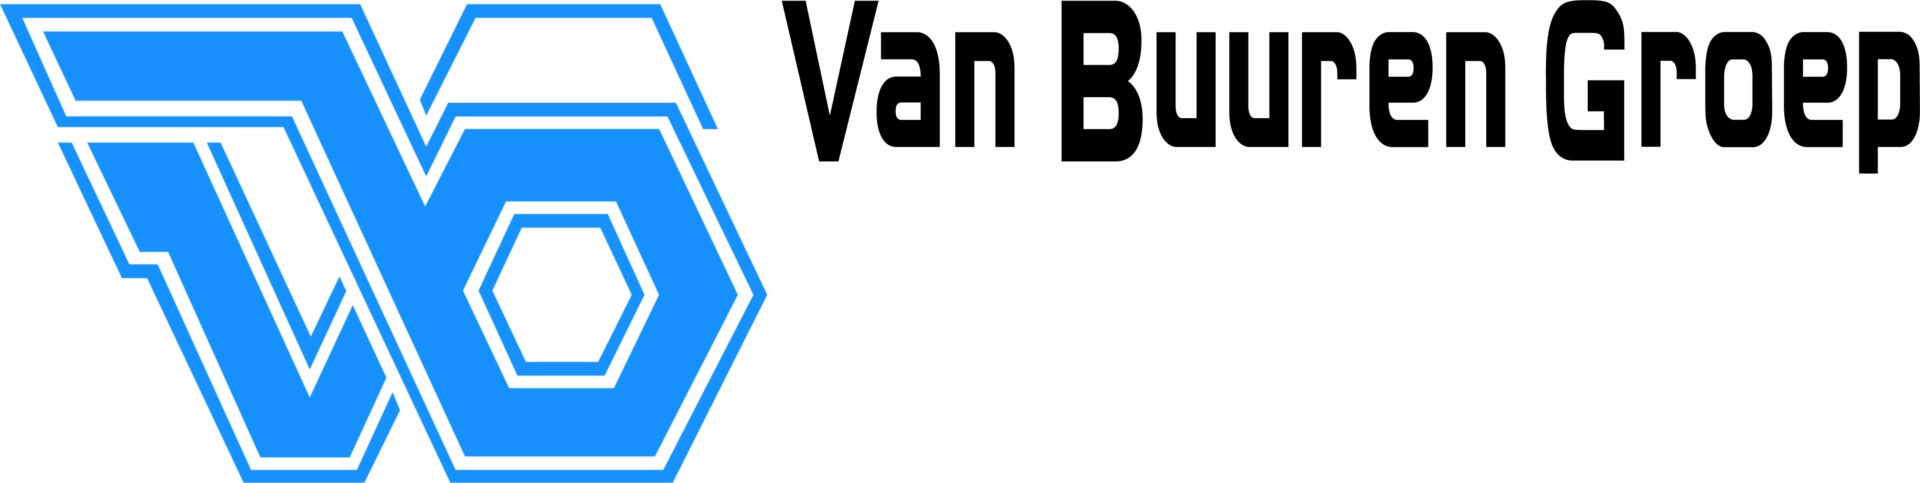 Logo-Van-Buuren-Groep-2019